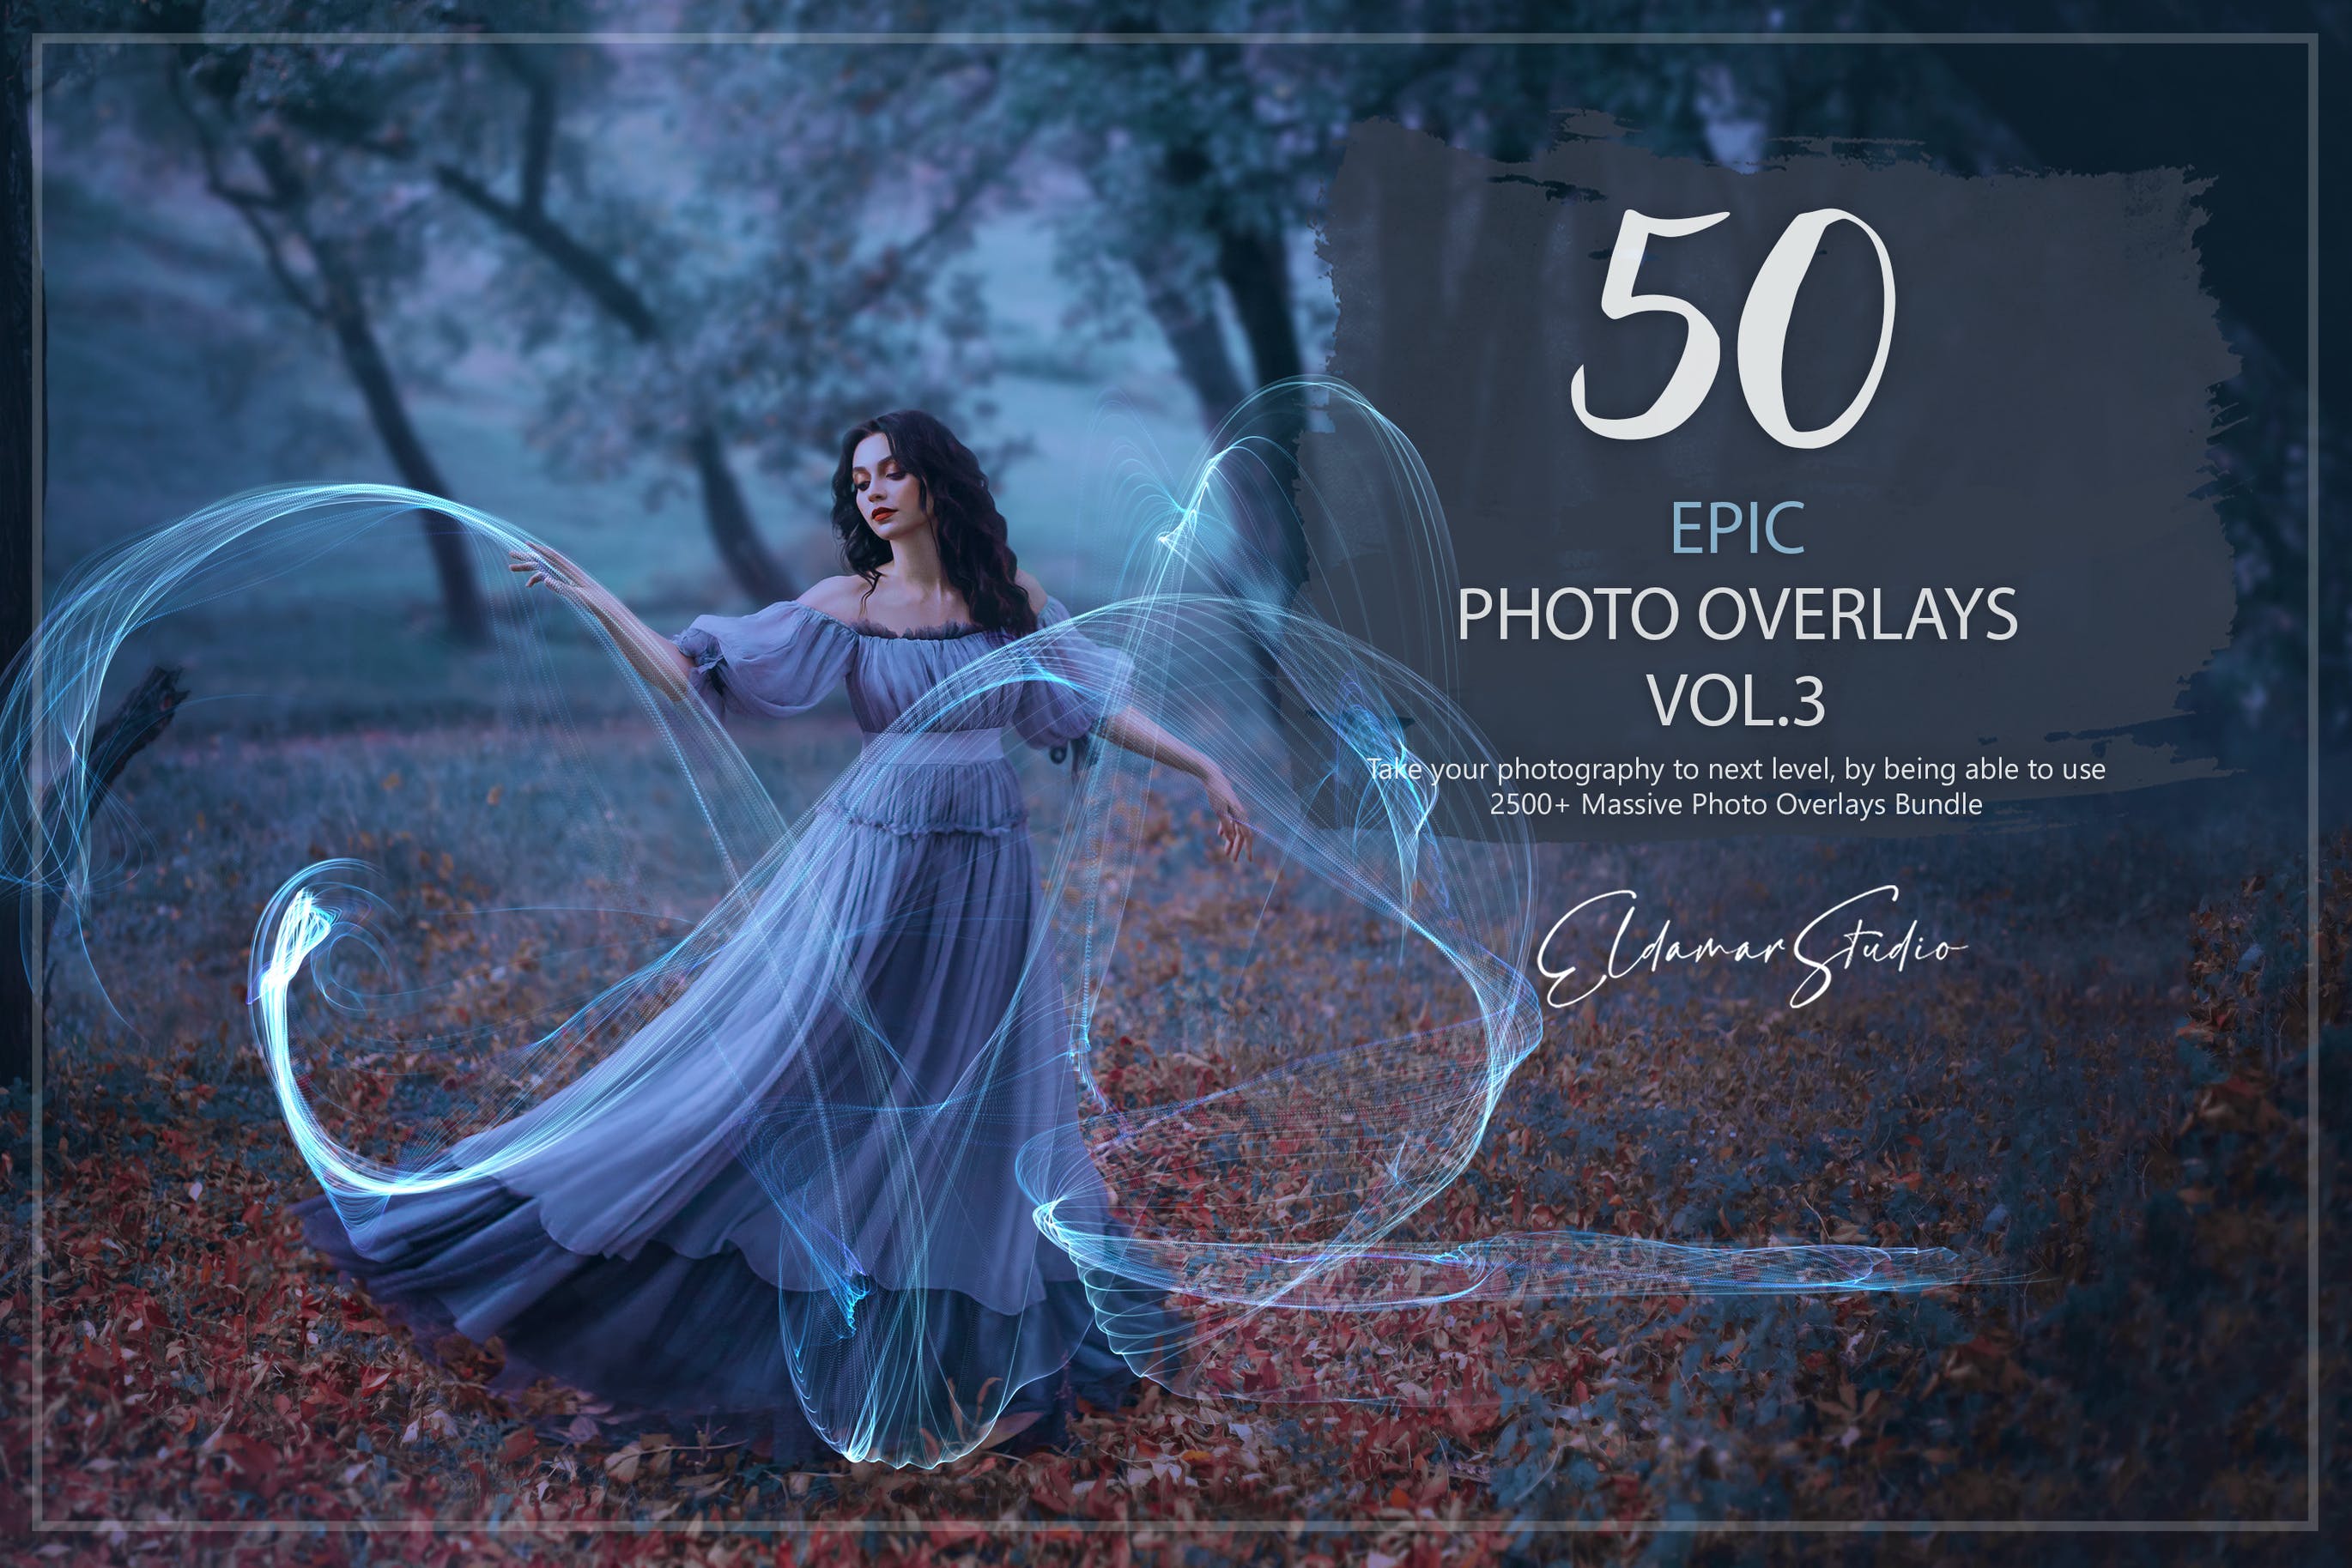 50个彩色线条照片叠层背景素材v3 50 Epic Photo Overlays – Vol. 3 图片素材 第1张